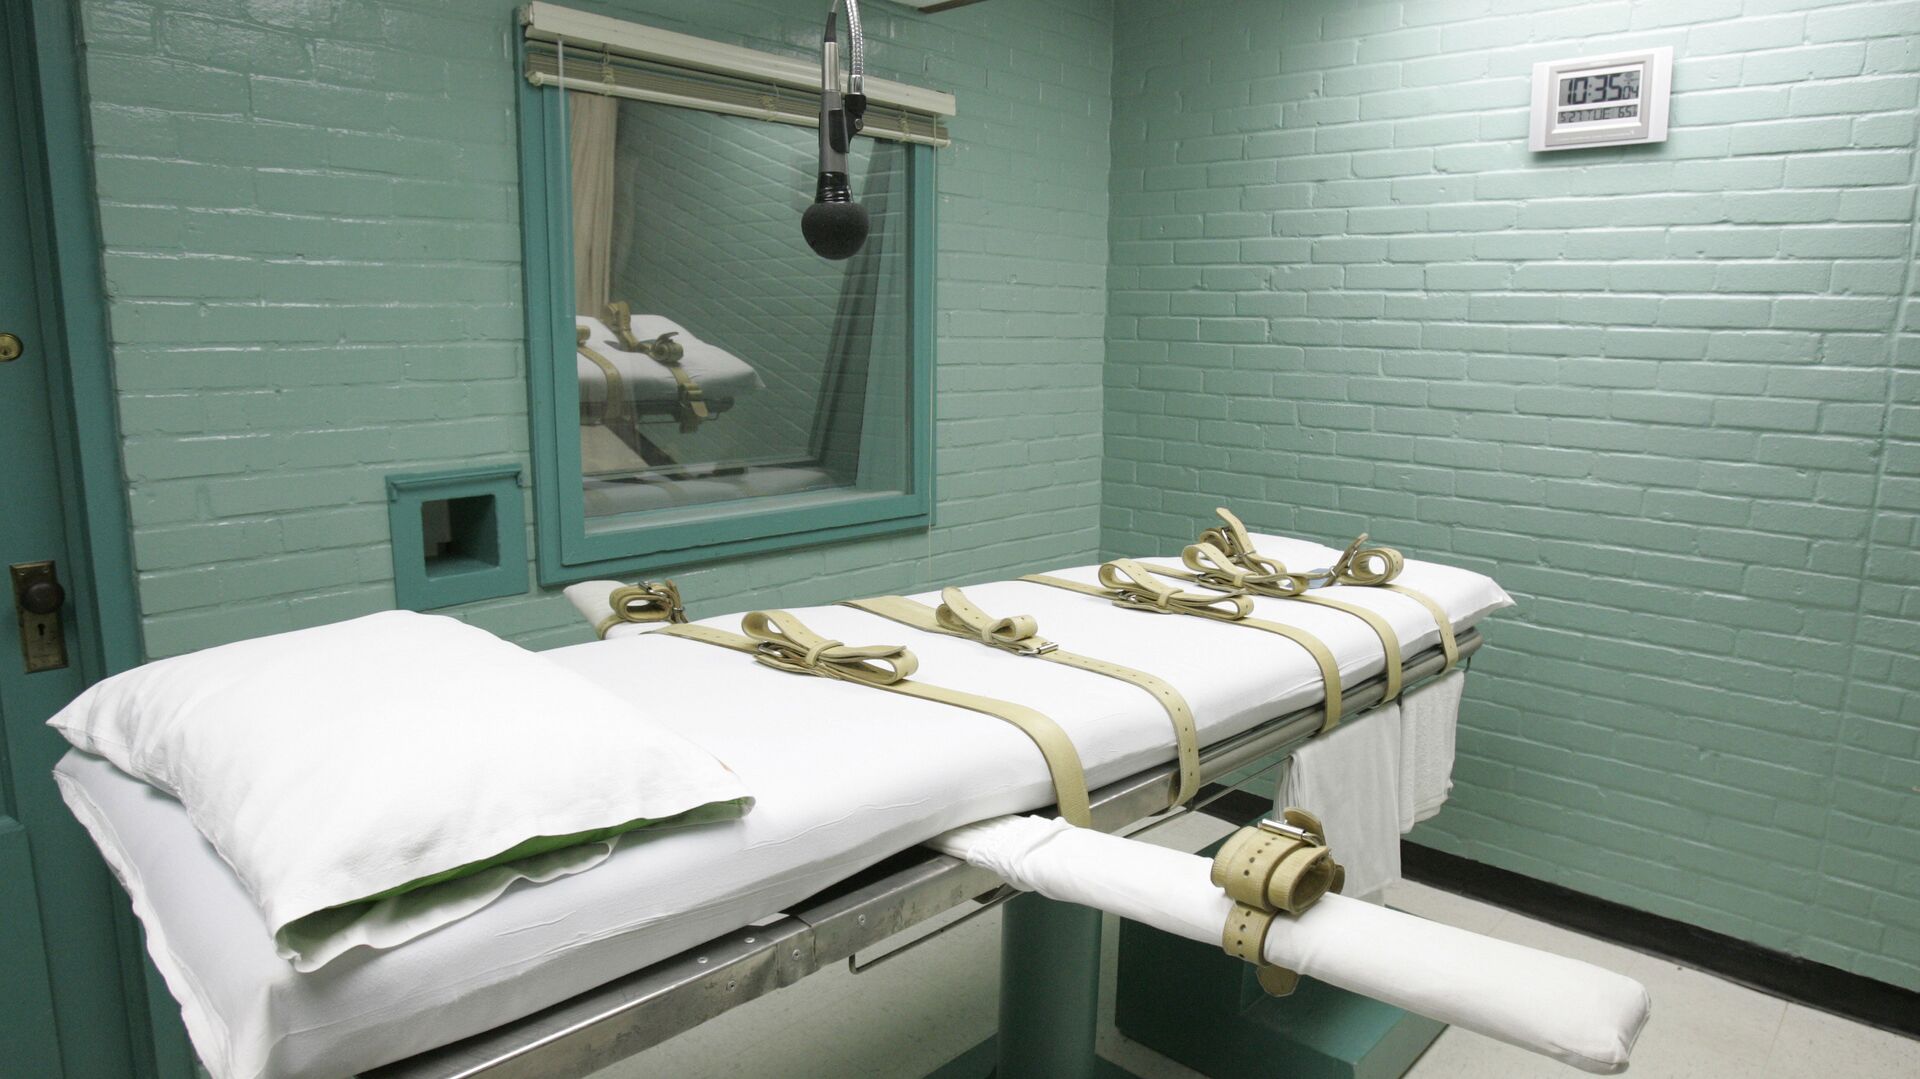 Комната, где приводится в исполнение смертный приговор через смертельную инъекцию, в тюрьме штата Техас, США - РИА Новости, 1920, 24.03.2021